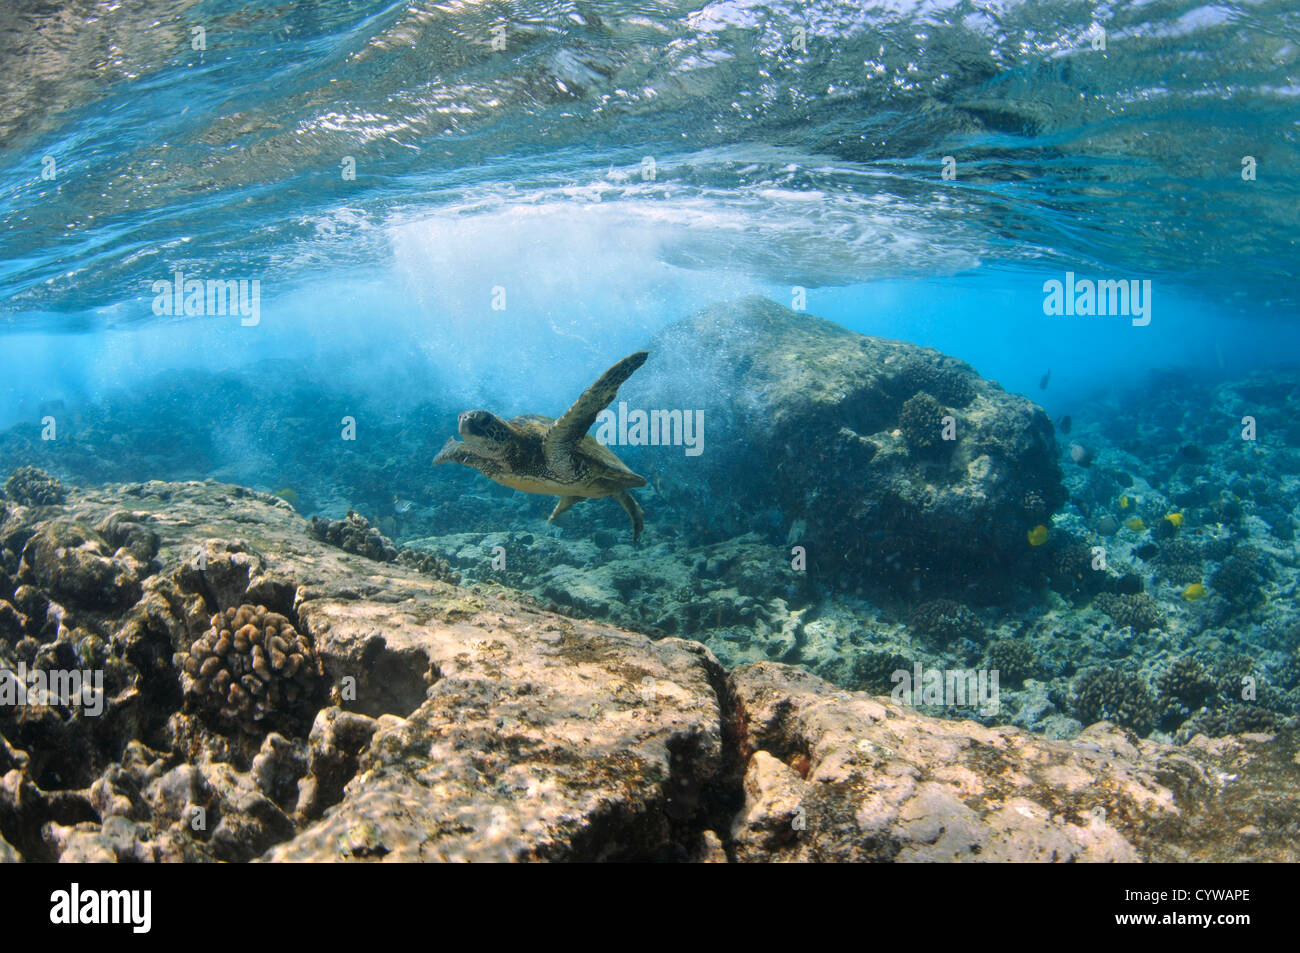 Juvenile grüne Meeresschildkröte, Chelonia Mydas, schwimmt im seichten Korallenriff, Captain Cook, Big Island, Hawaii, Nordpazifik Stockfoto